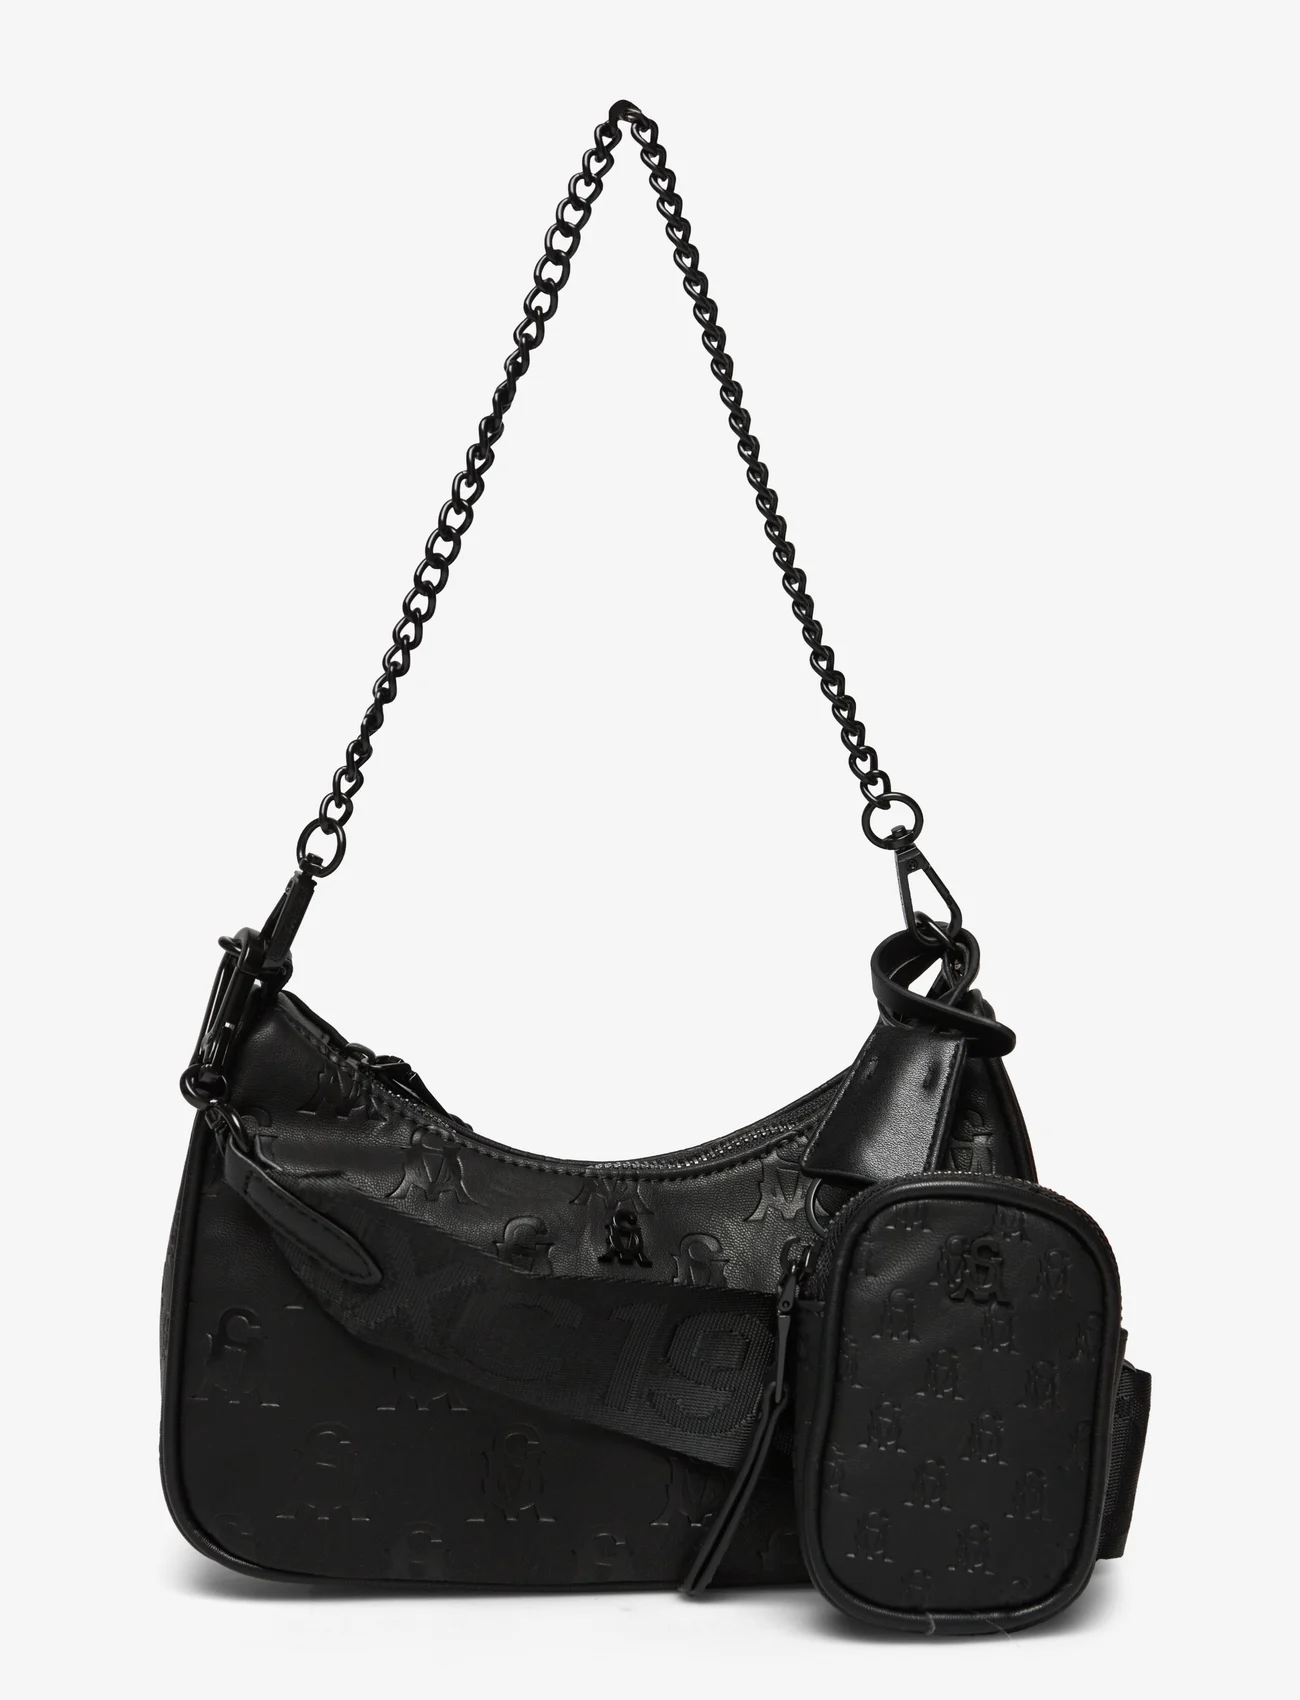 Steve Madden - Bvital-X Crossbody bag - geburtstagsgeschenke - black/black - 0